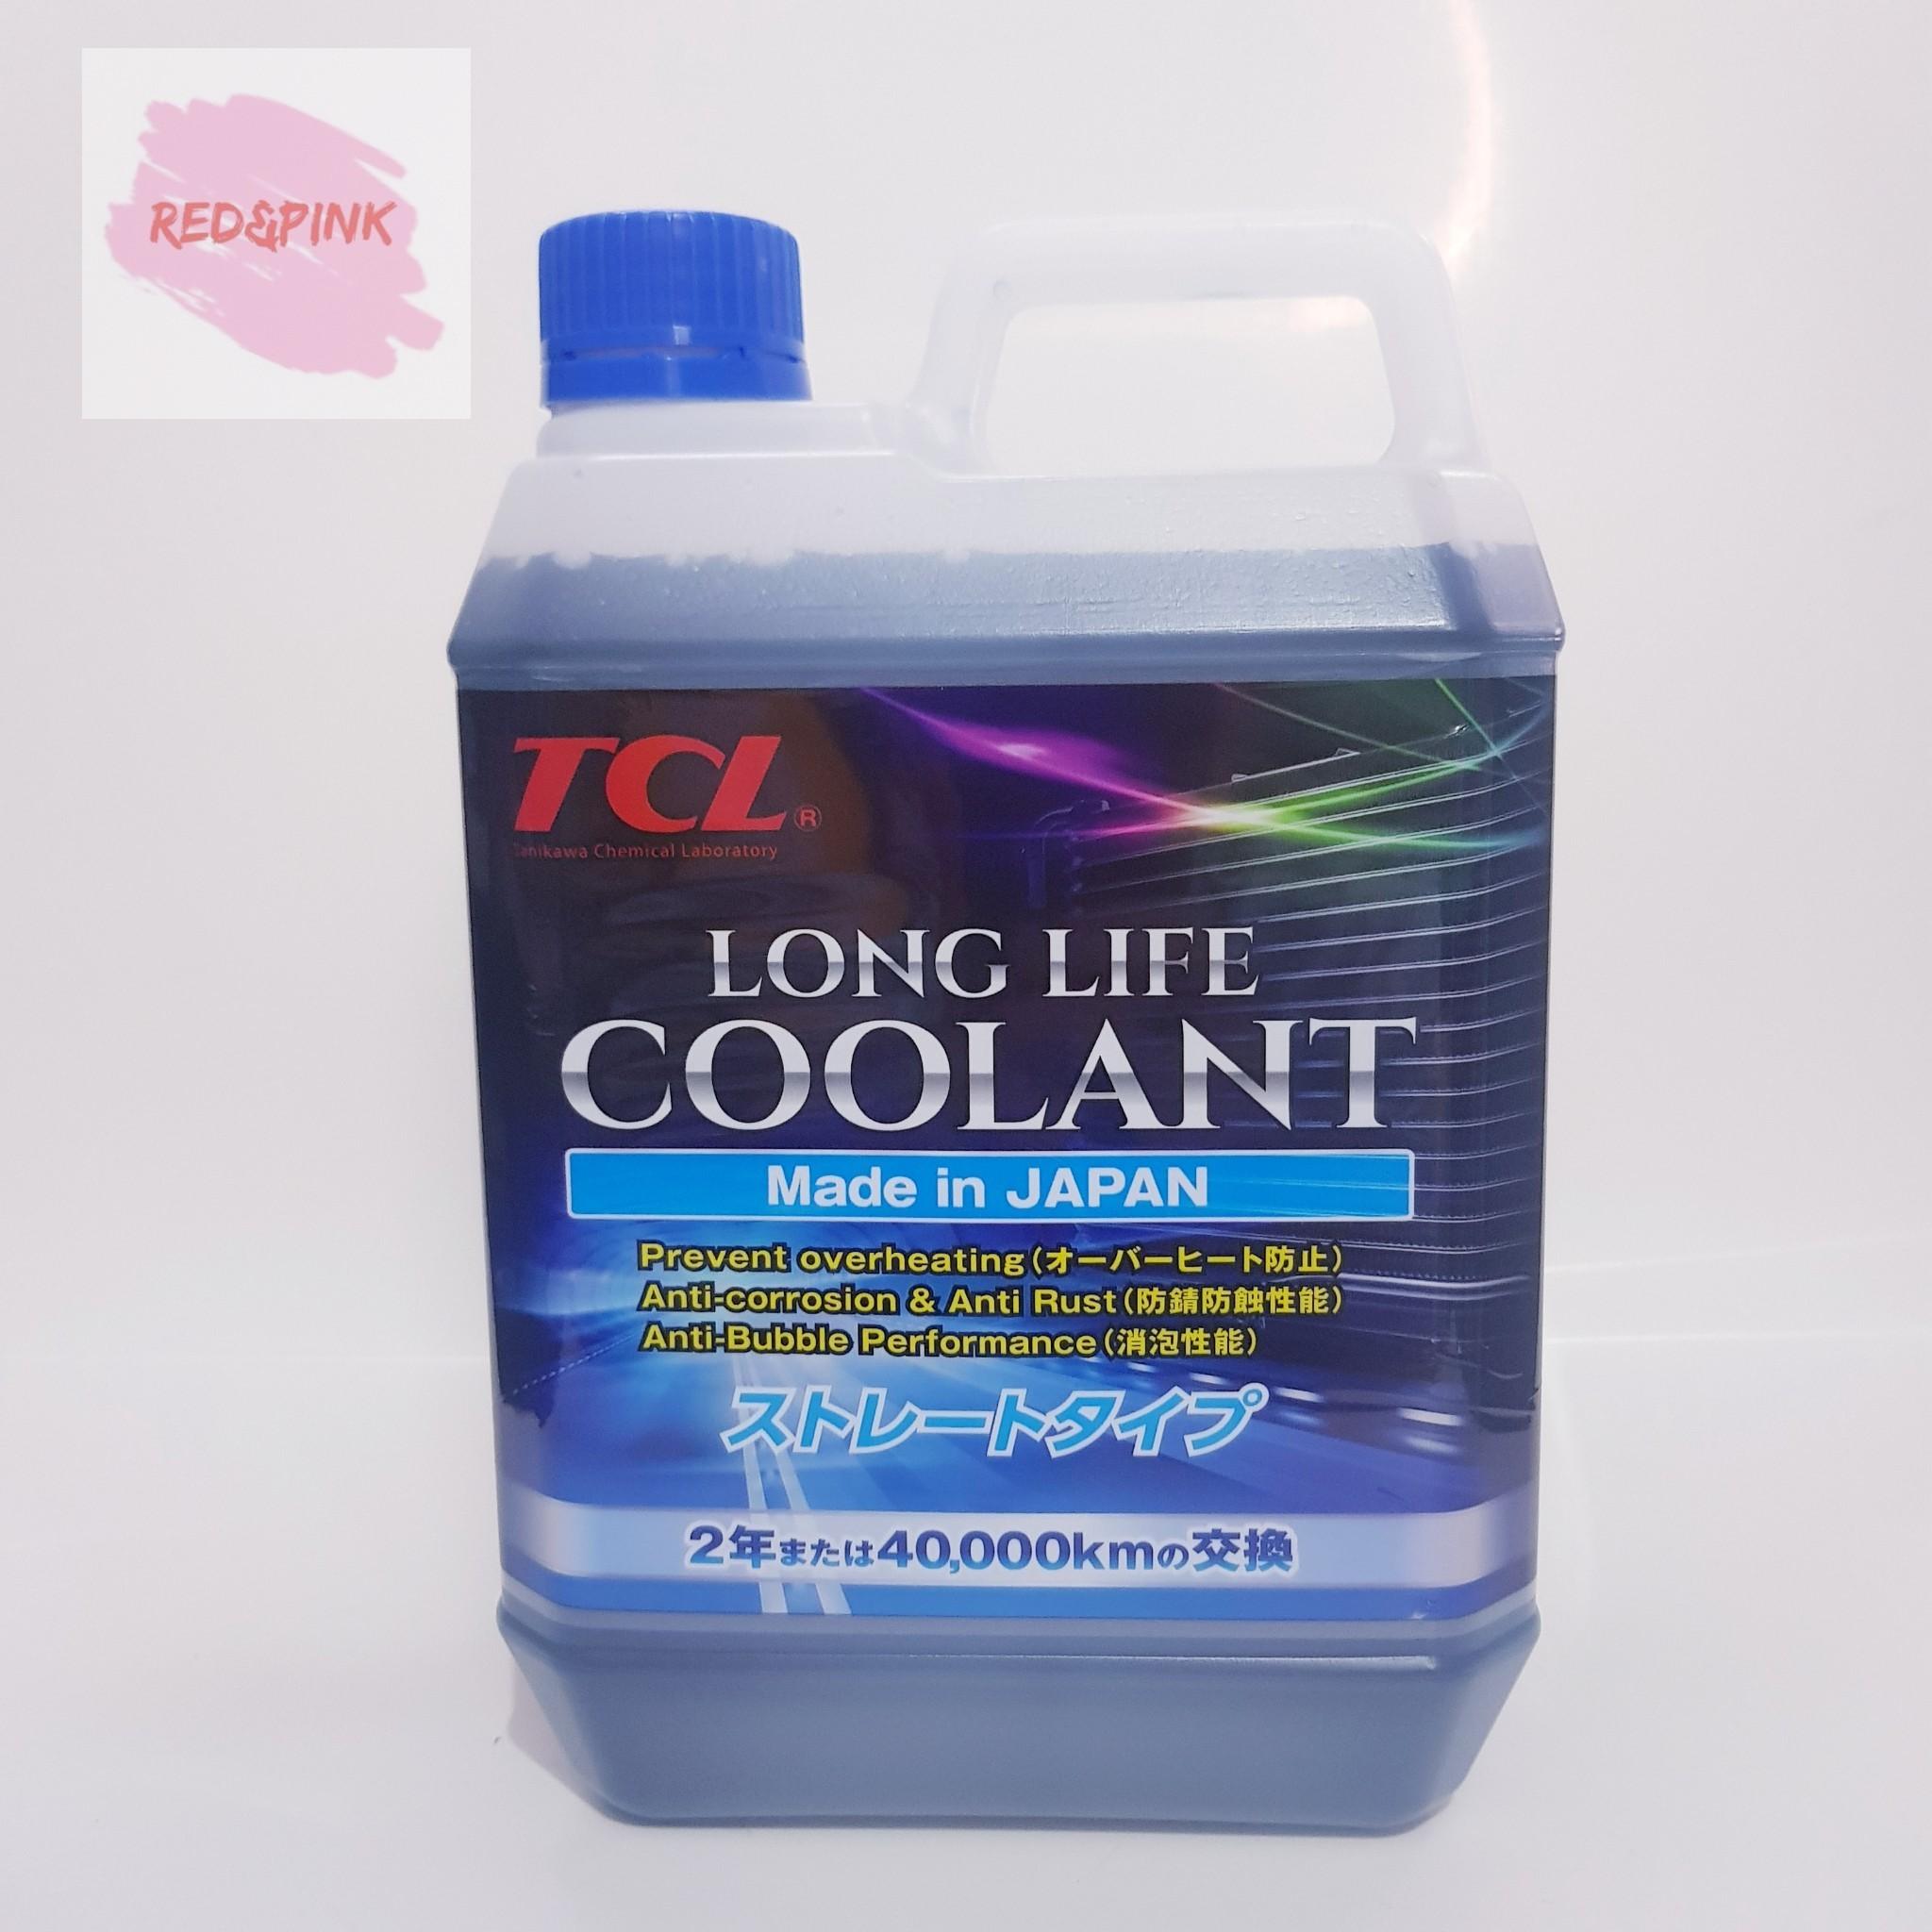 น้ำยาหล่อเย็นหม้อน้ำ ยี่ห้อ TCL ขนาด 2 ลิตร สำหรับรถยนต์ทุกรุ่น (สีน้ำเงิน)